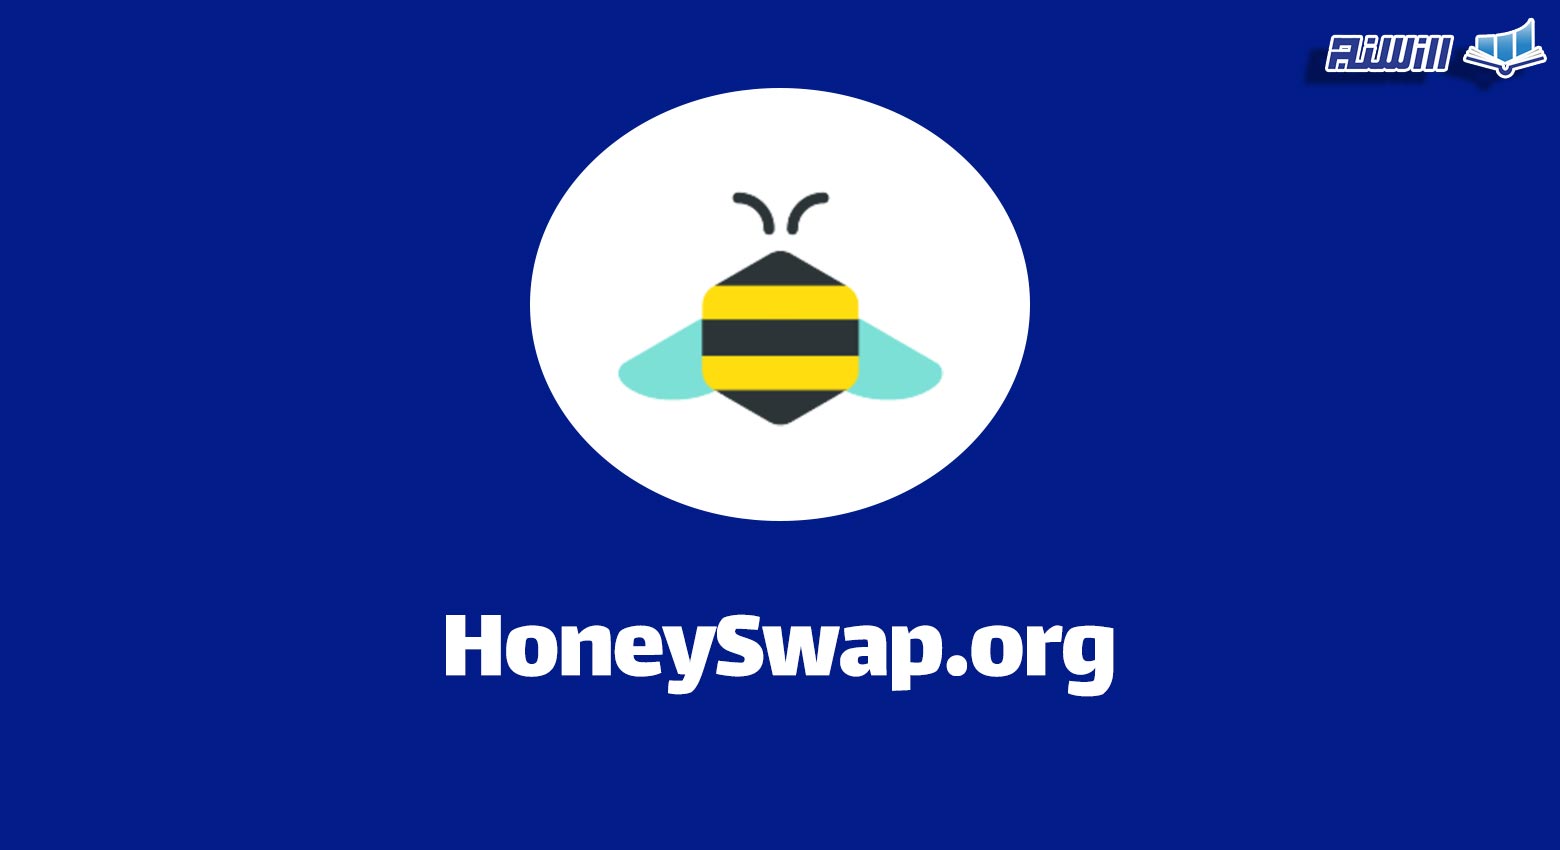 ویژگی های صرافی هانی سواپ HoneySwap